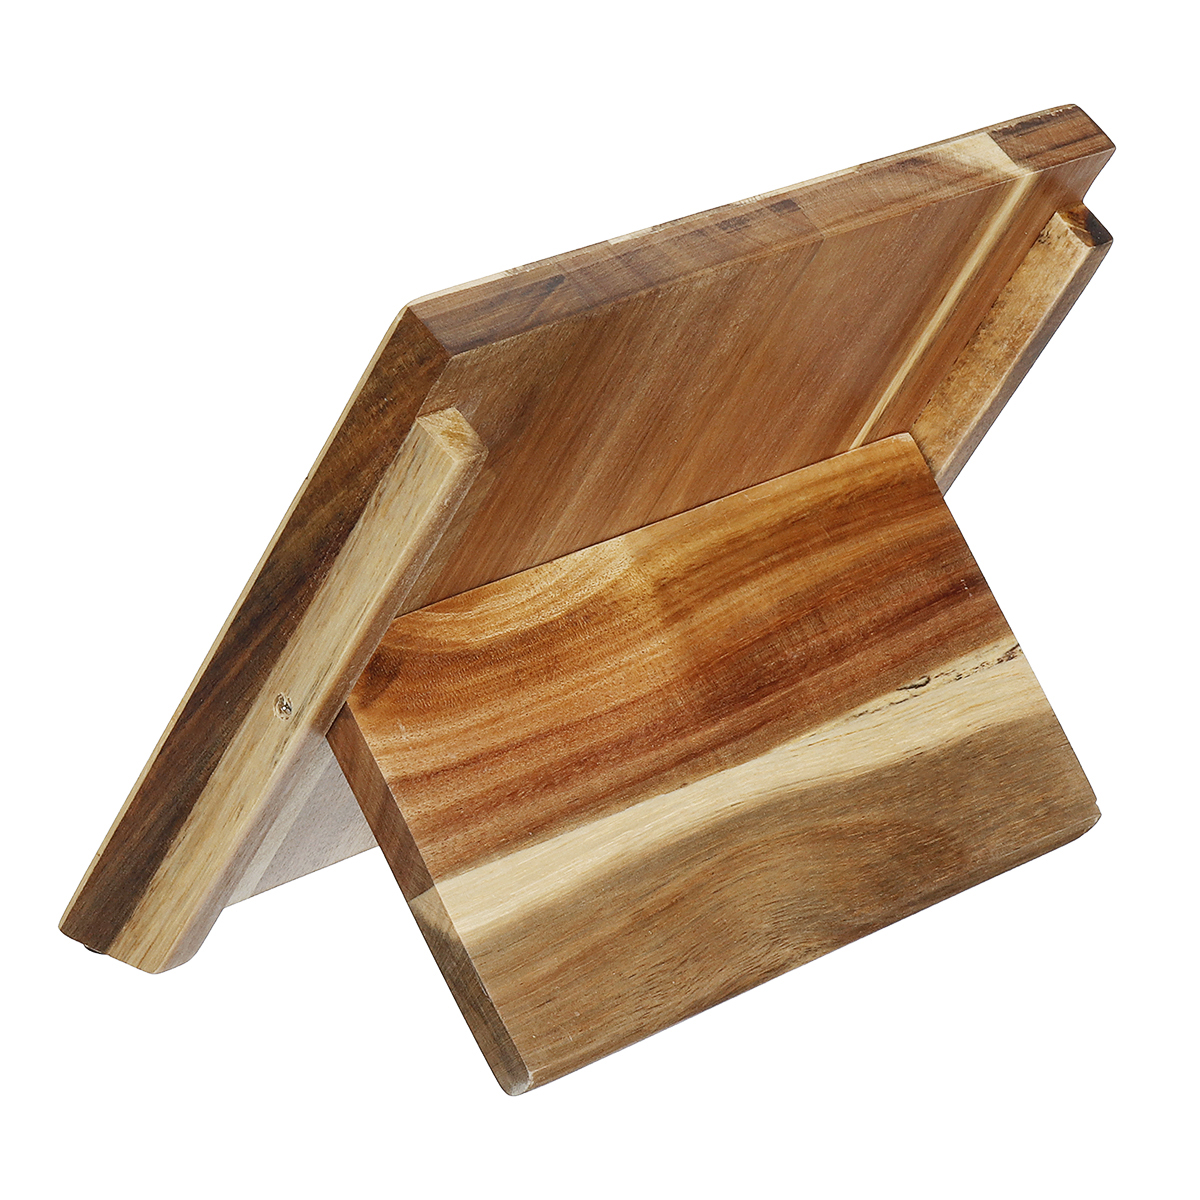 Wooden-Magnetic-Knifes-Holder-Block-Kitchen-Cookware-Cutlery-Storage-Organizer-Kitchen-Storage-Conta-1626936-5